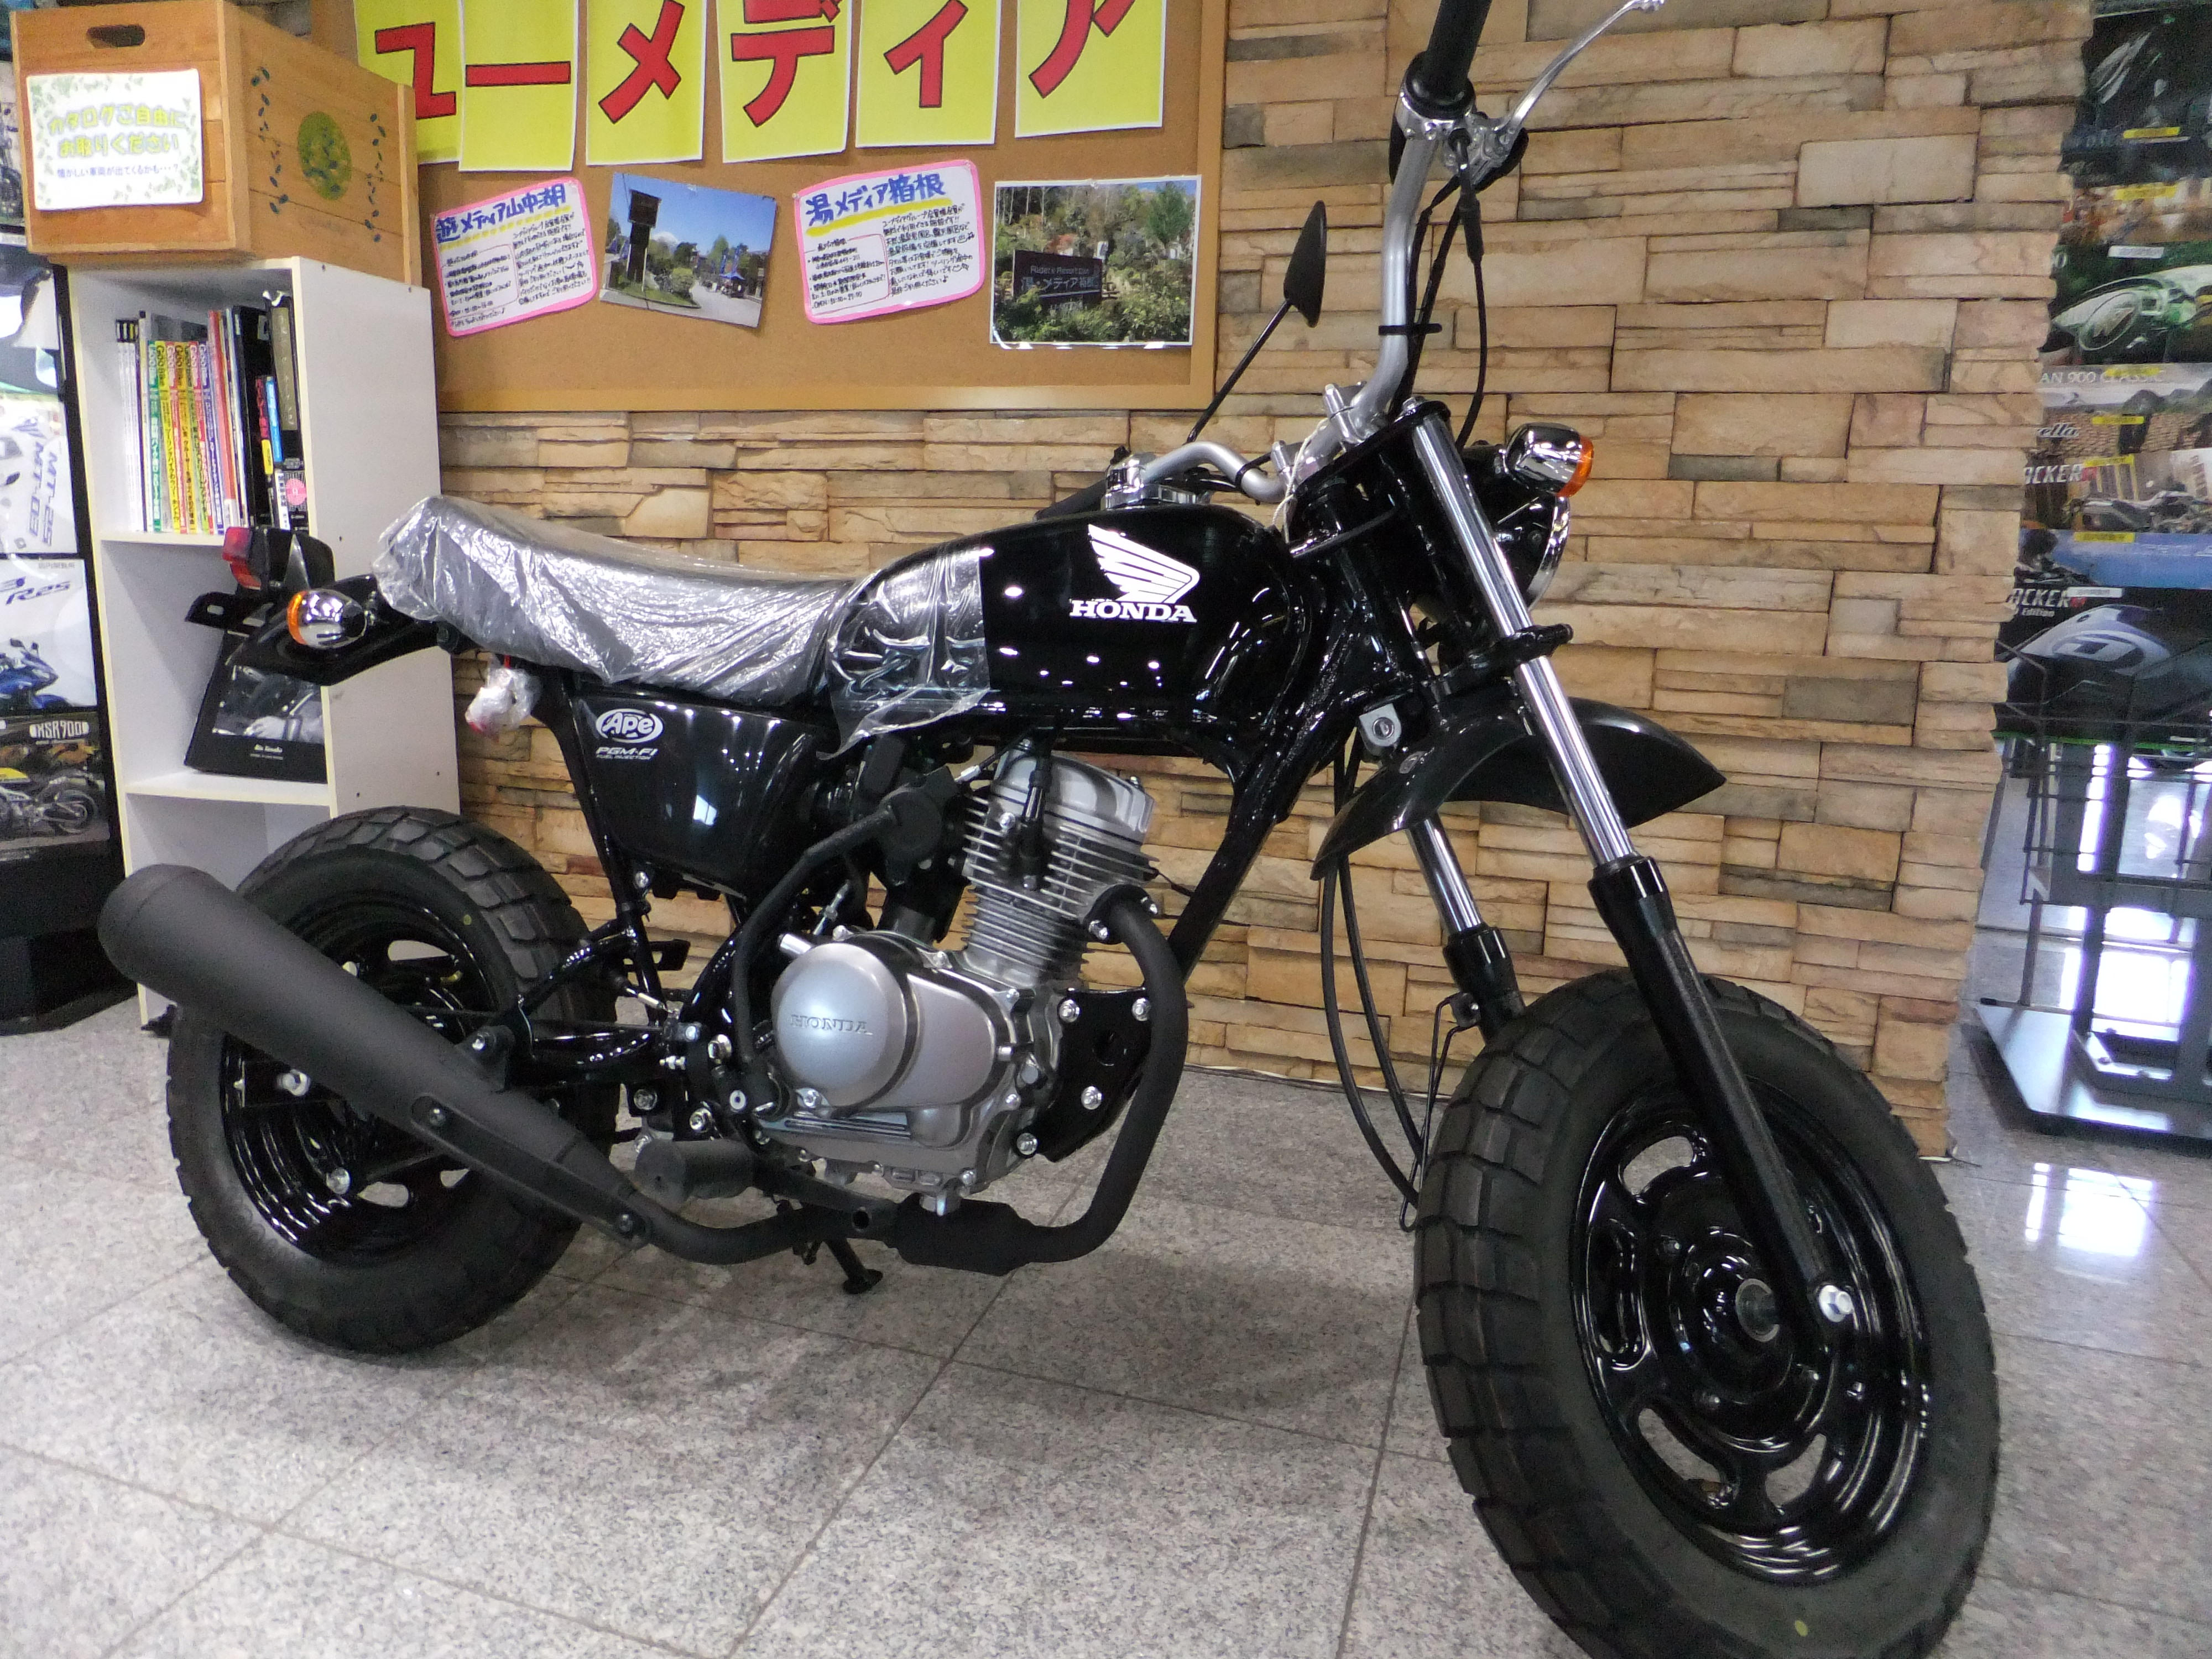 エイプ50 メーカー完売 お買い求めはお早目に 最新情報 U Media ユーメディア 中古バイク 新車バイク探しの決定版 神奈川 東京でバイク探すならユーメディア